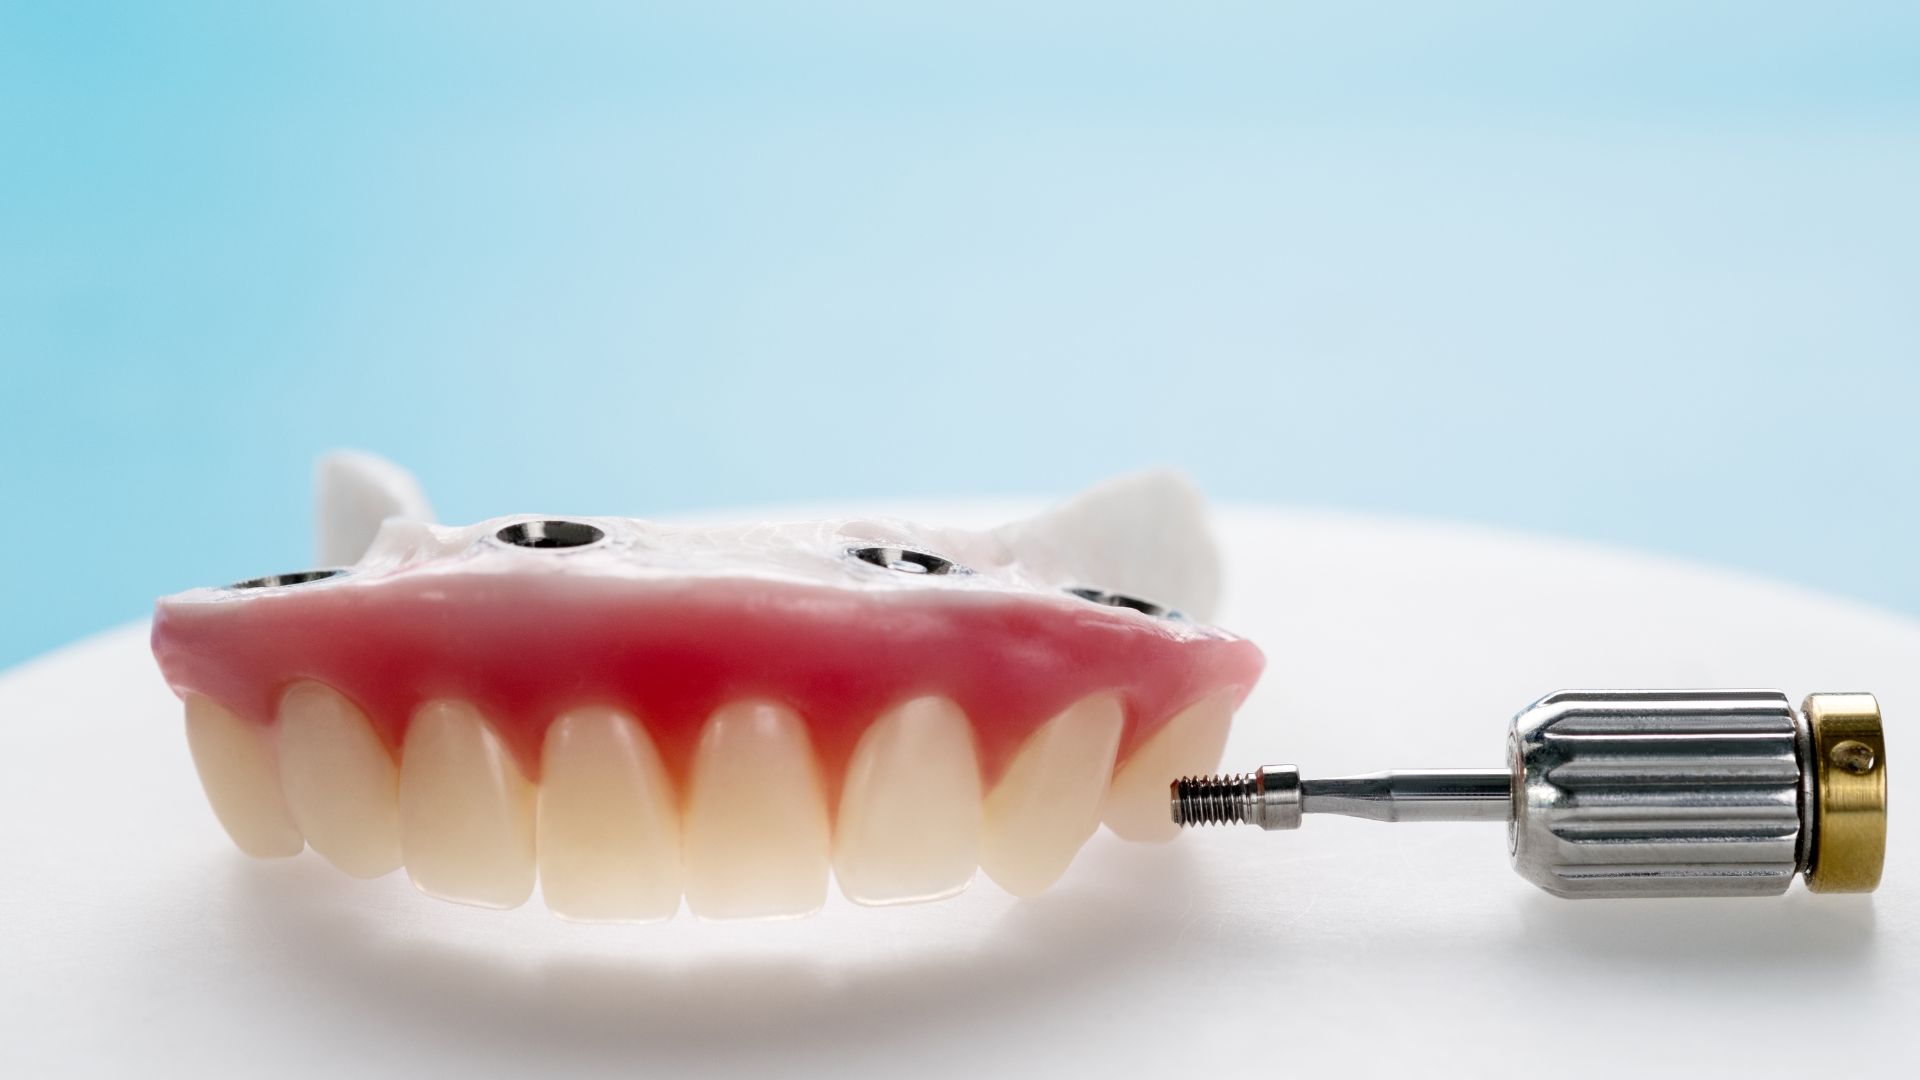 Sobredentadura sobre implantes dentales: ¿En qué consiste?